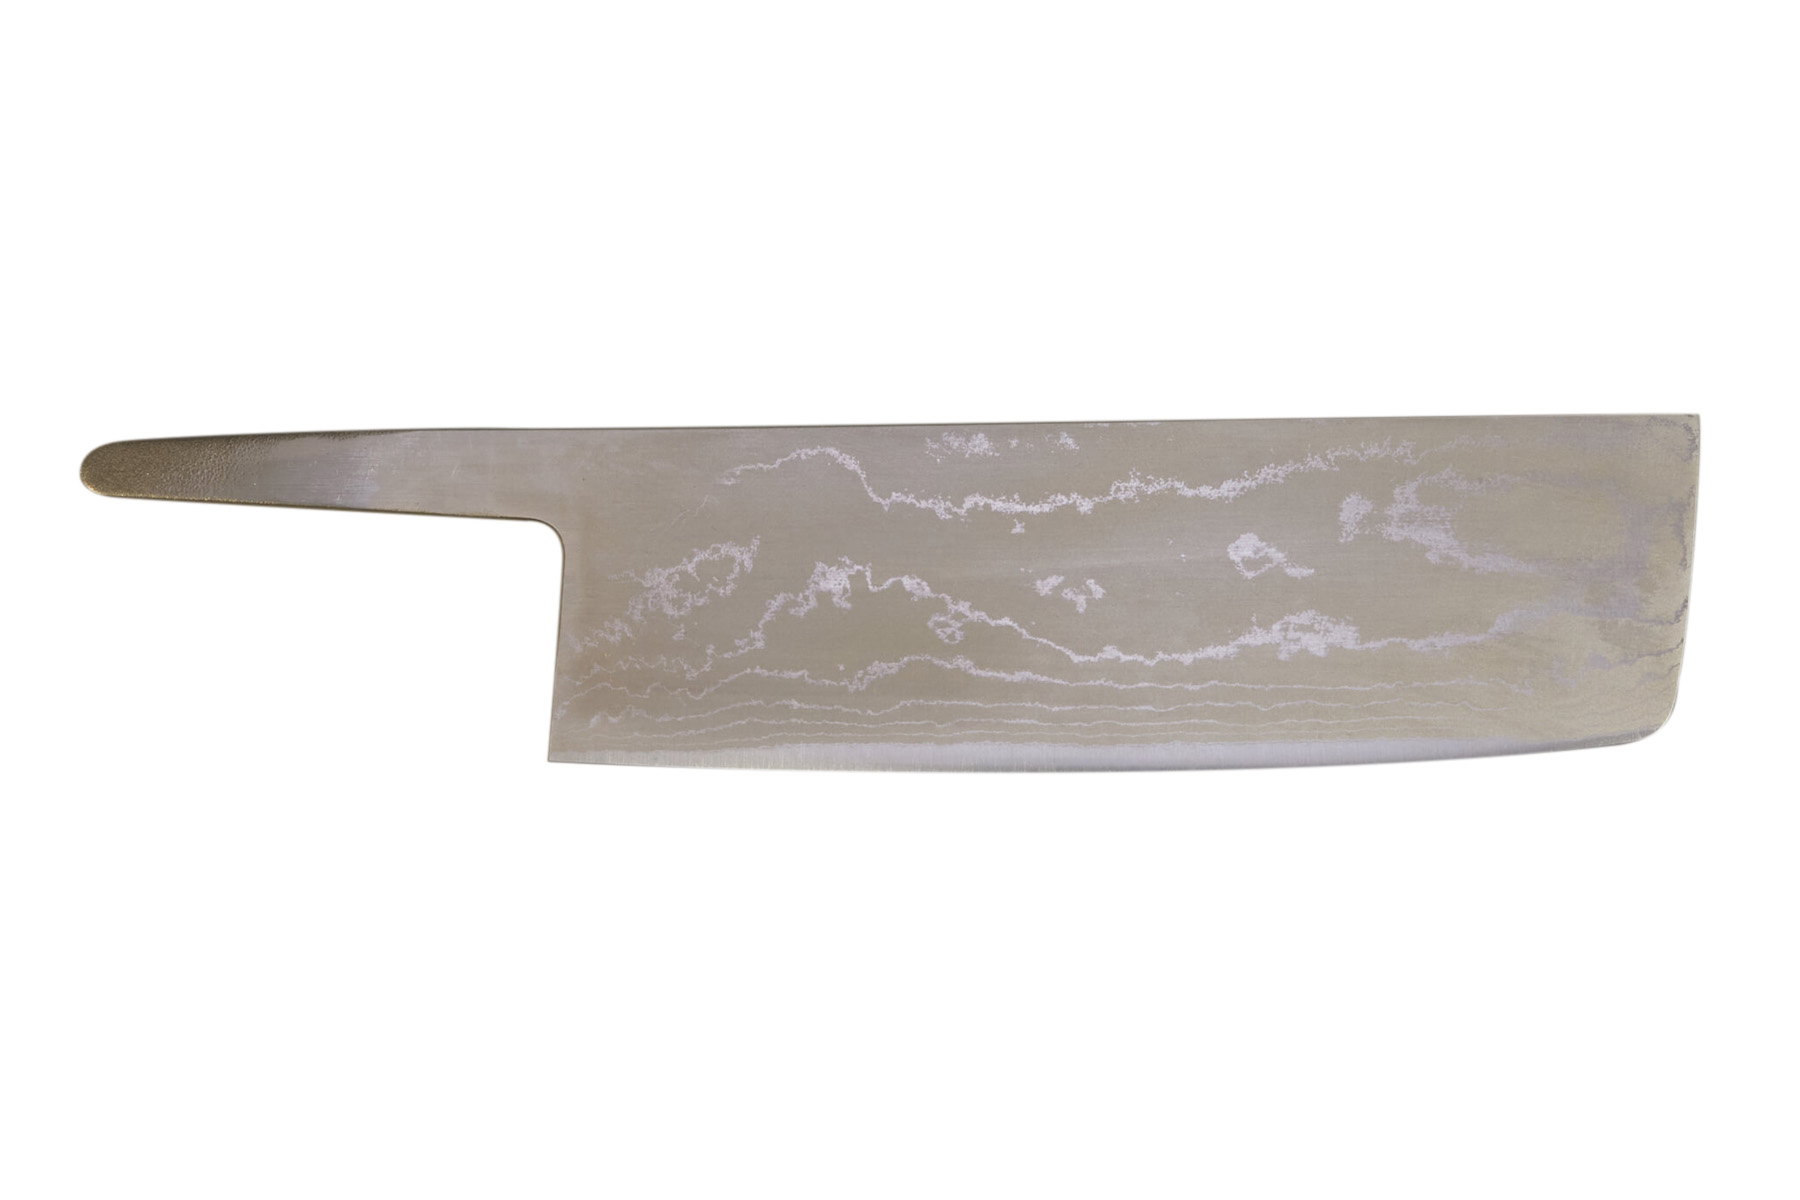 Lame à monter japonaise  White Paper steel damas - Usuba 160 mm